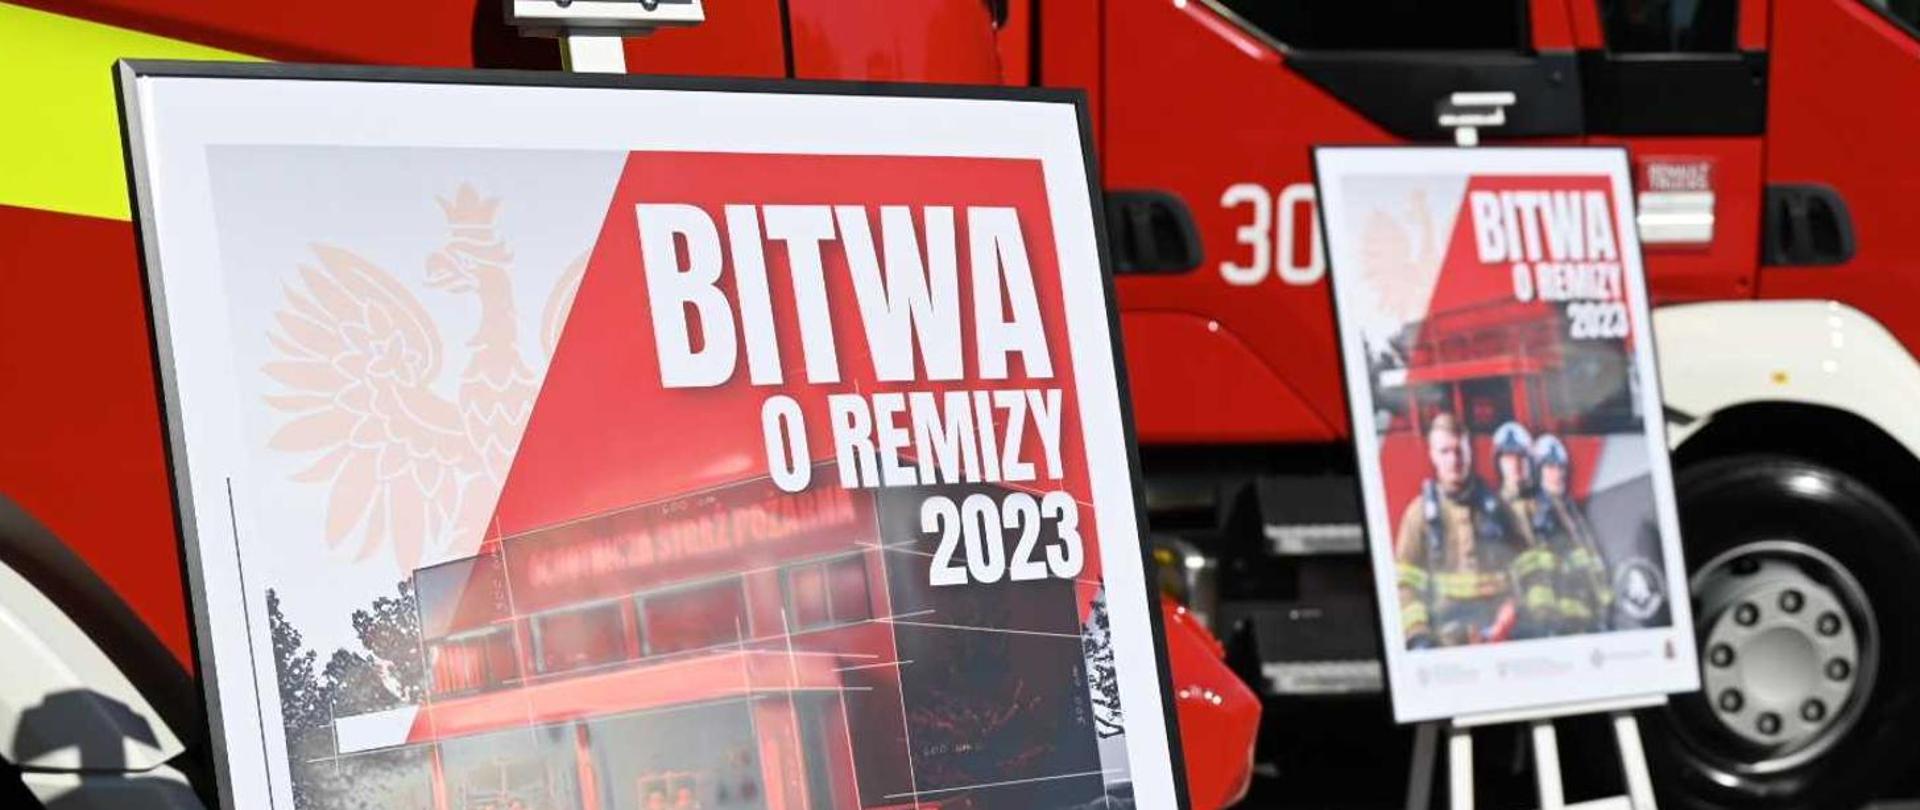 Dwa plakaty promocyjne akcji "Bitwa o Remizy 2023" na tle dwóch pojazdów pożarniczych